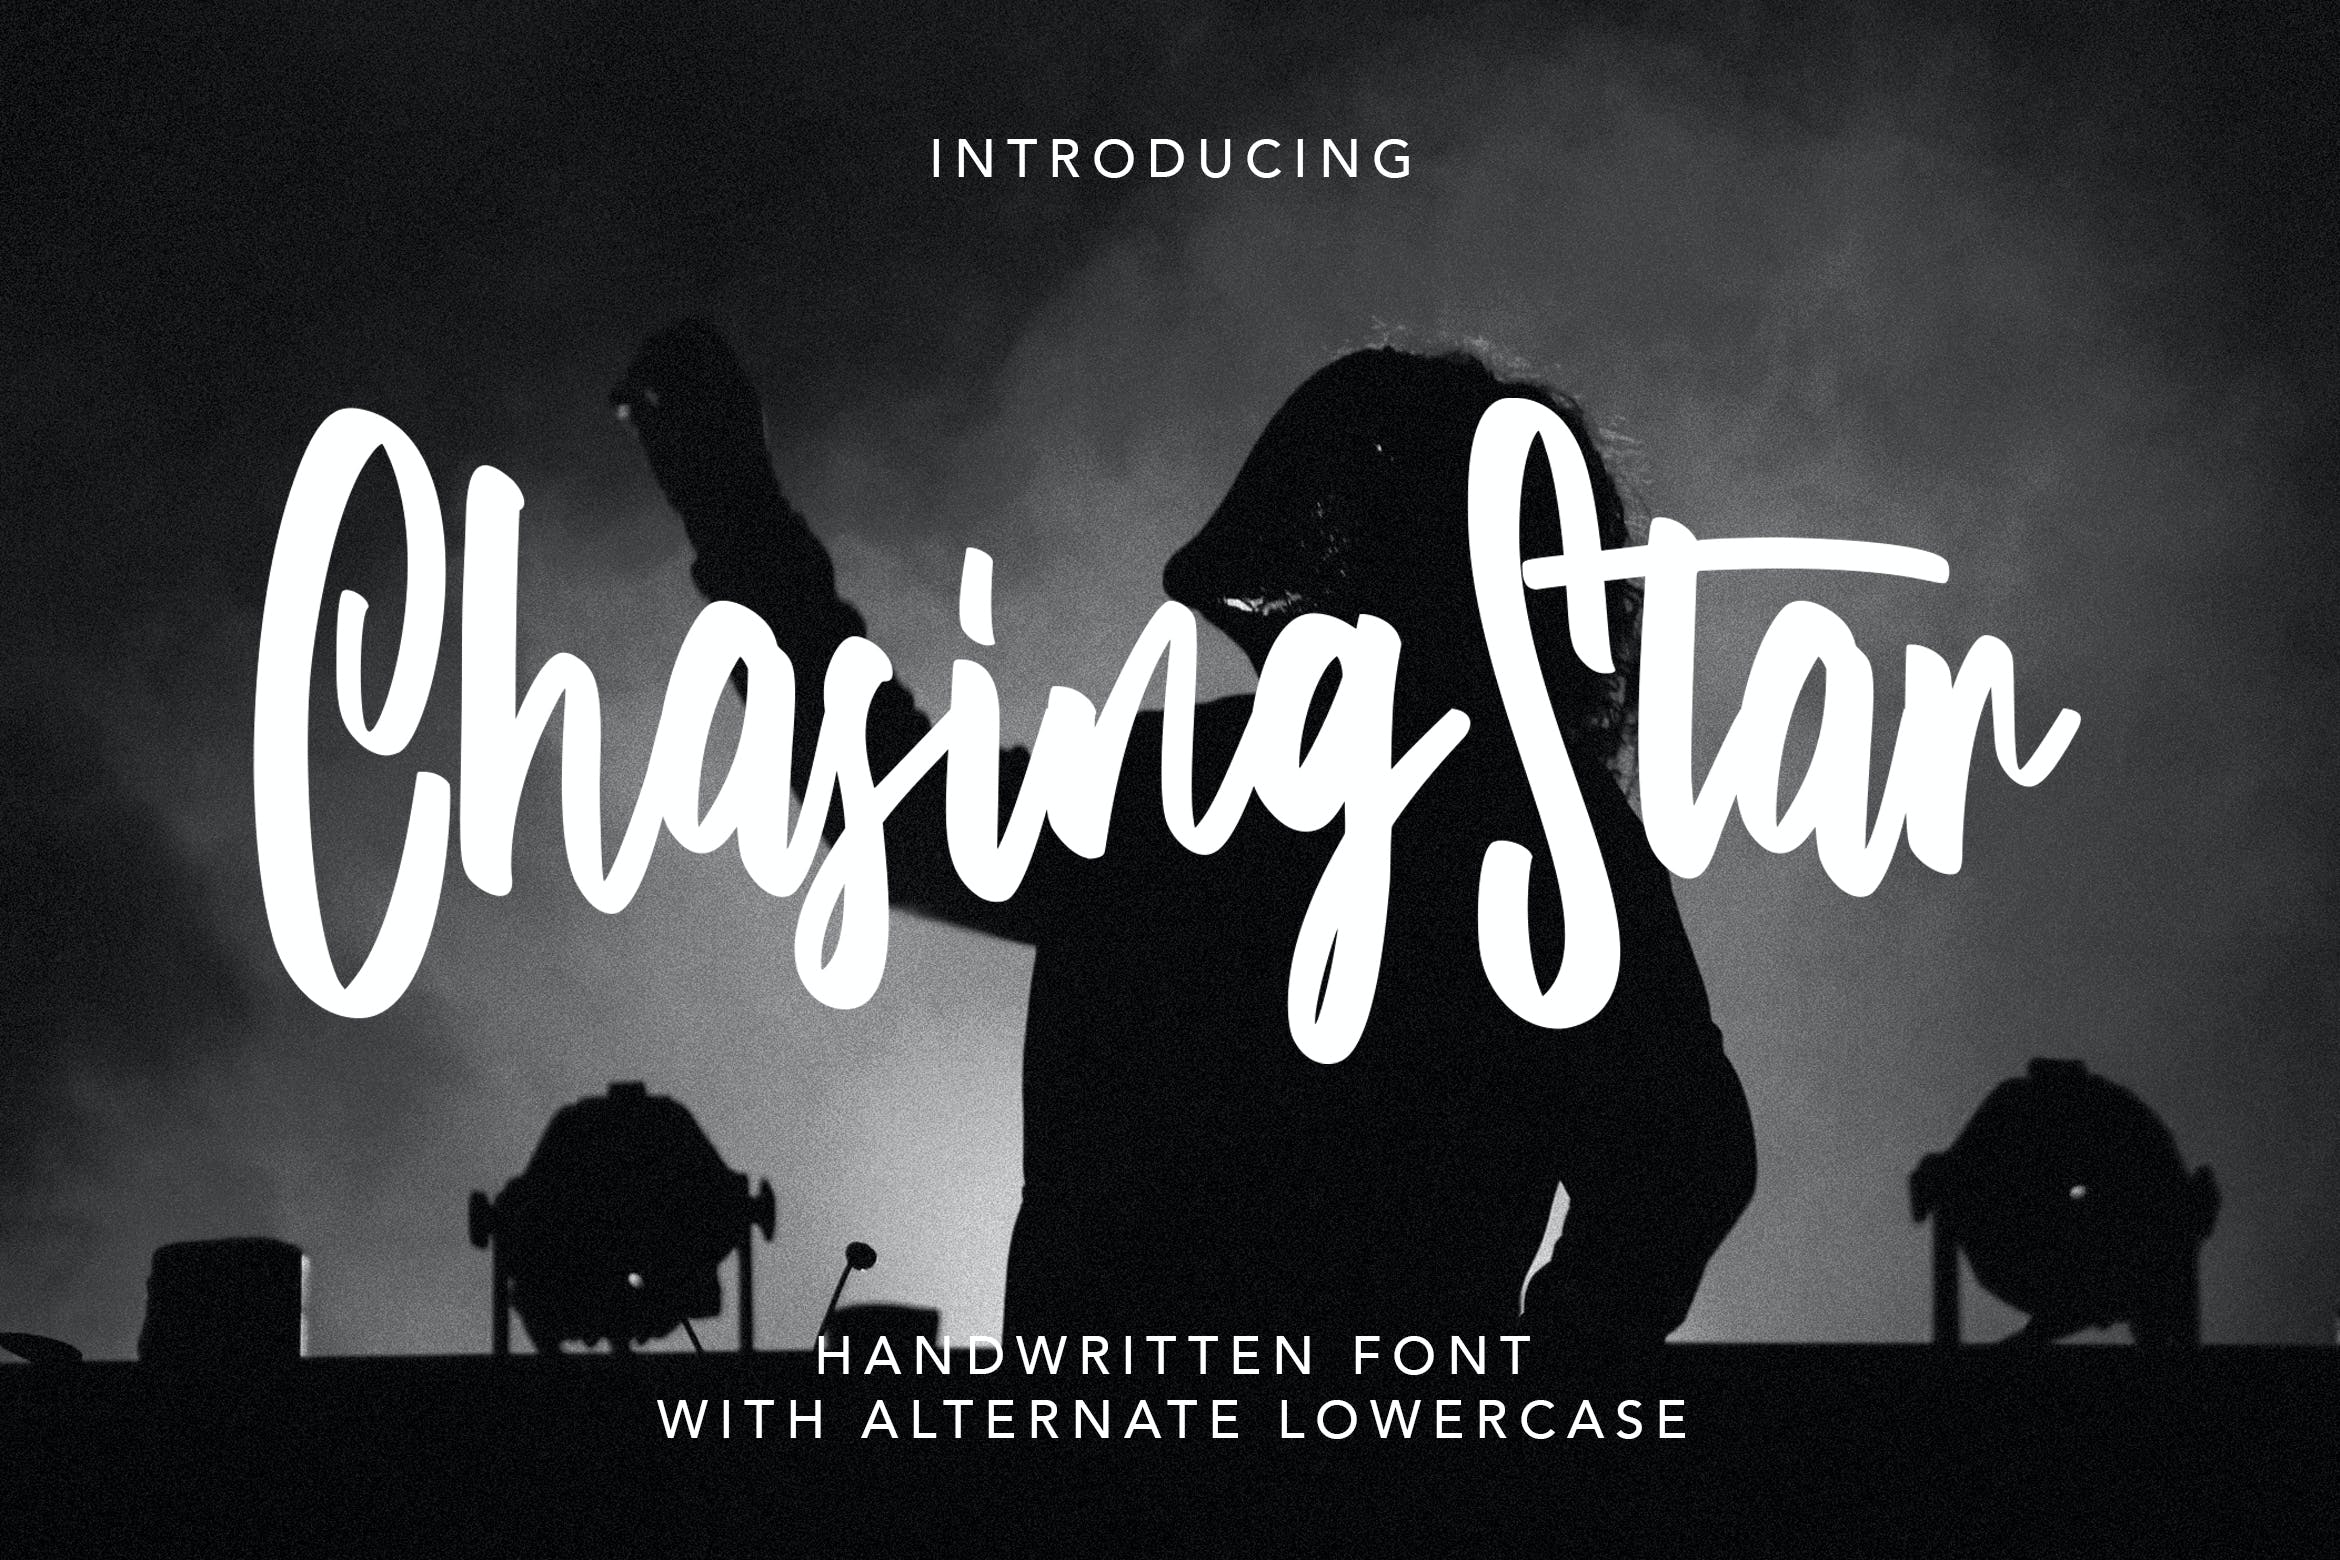 创意英文连笔手写效果字体 ChasingStar – Handwritten Font 设计素材 第1张